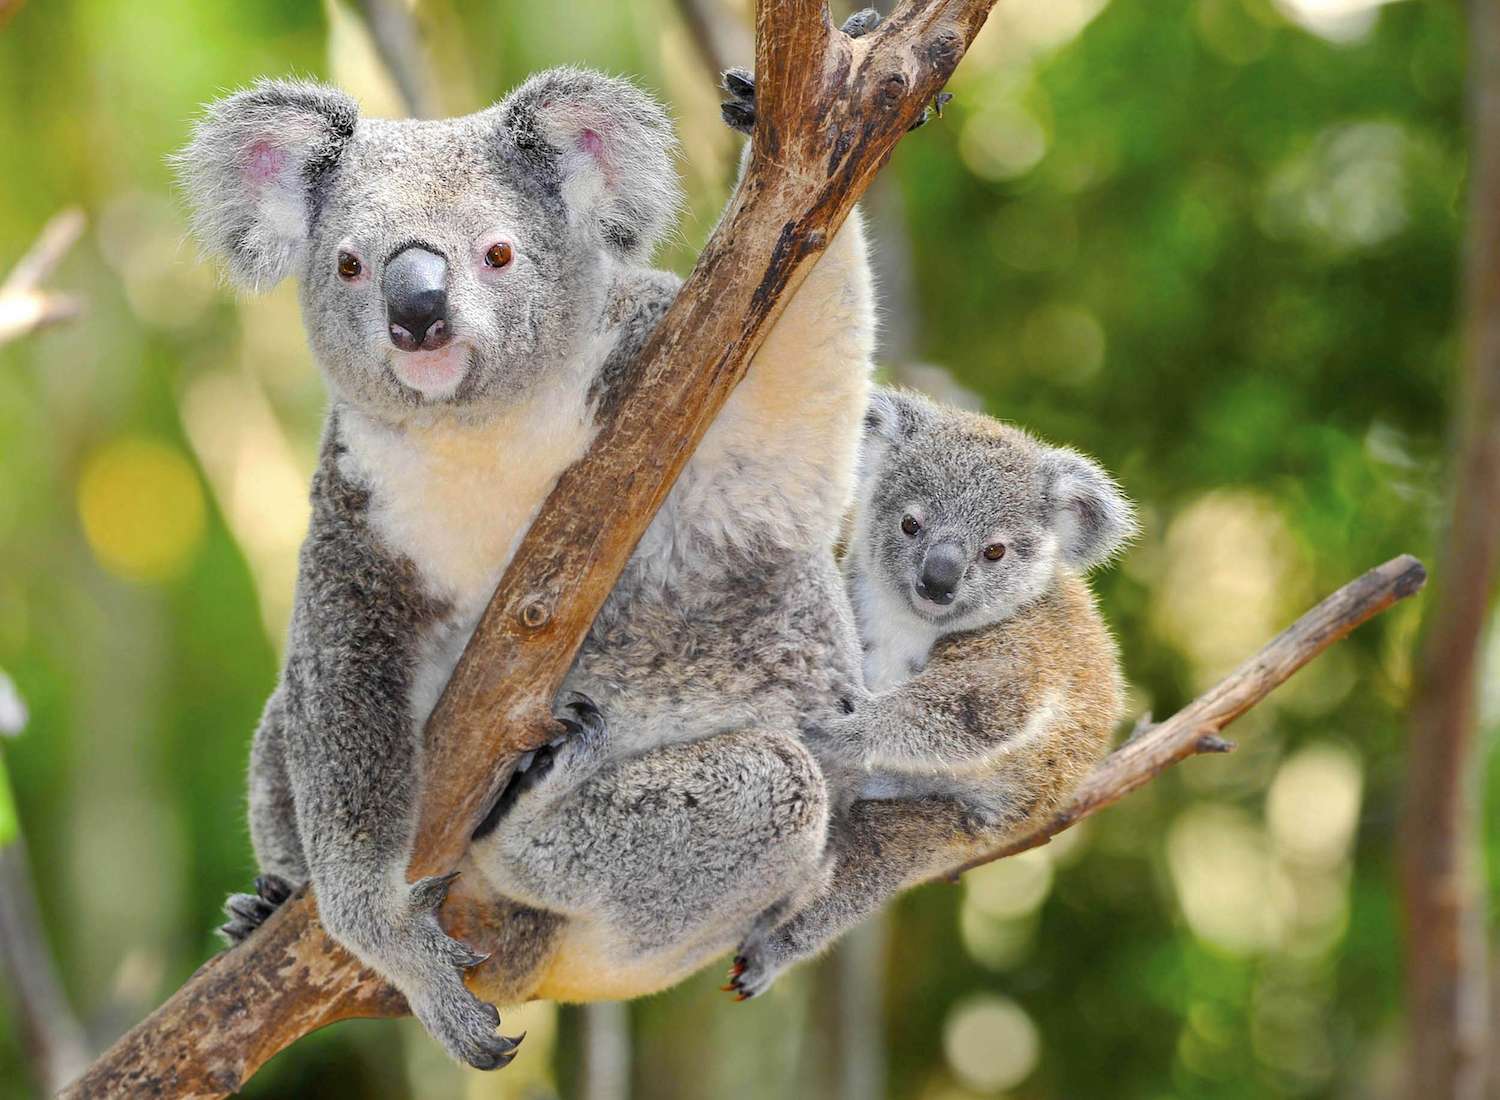 Australian Koala Bear with her baby in eucalyptus tree in Australia. 